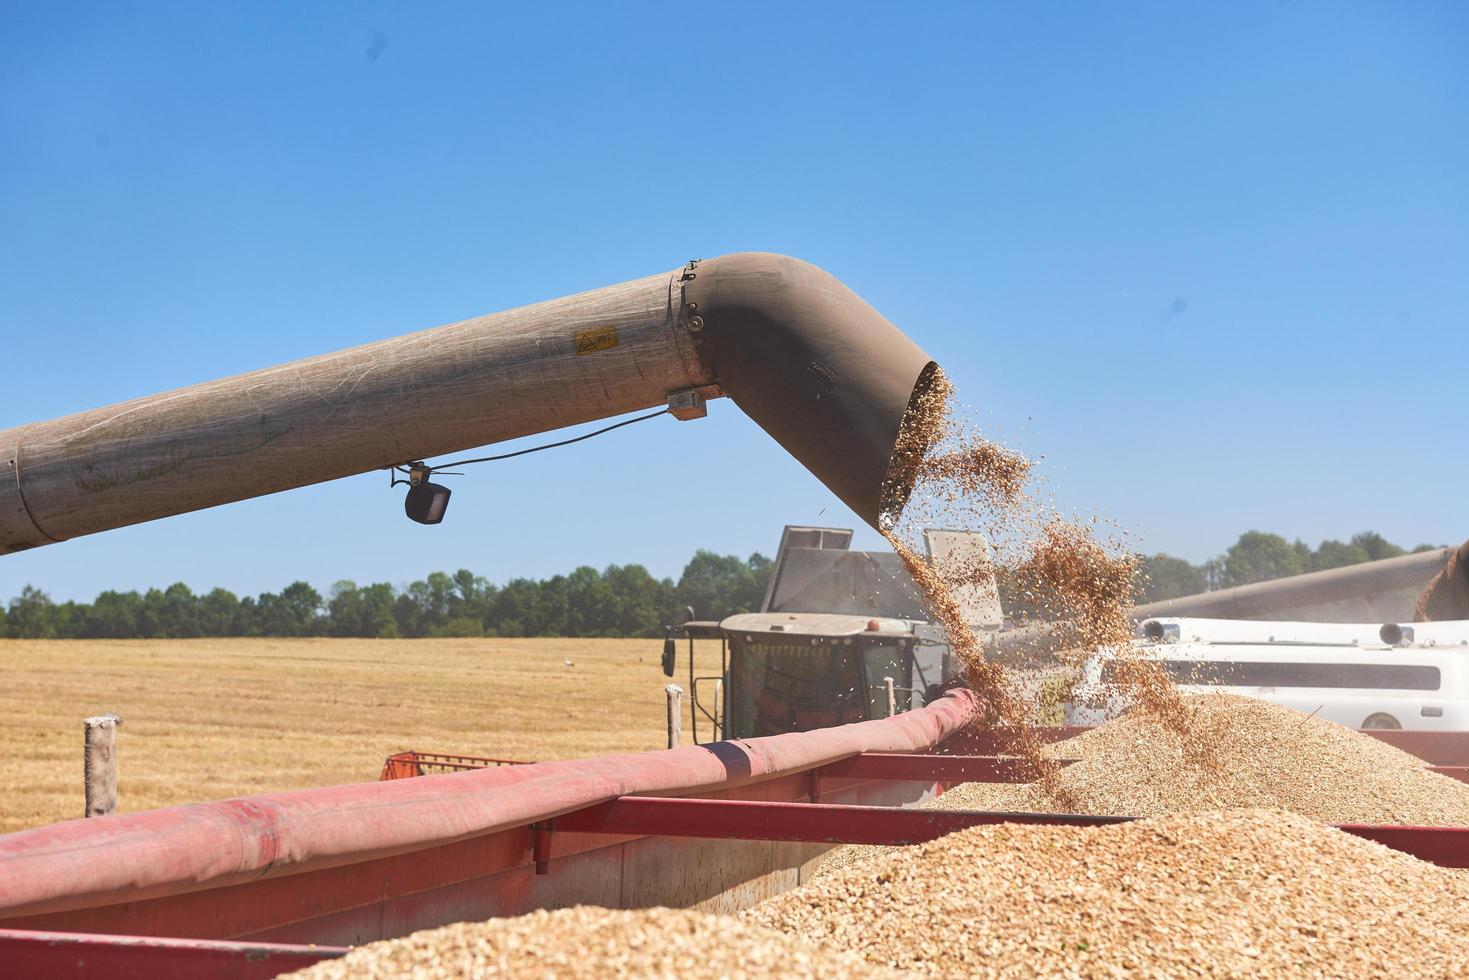 ternopil - 20 de julho. colheitadeira em ação no campo de trigo. colheita é o processo de colher uma colheita madura dos campos em 20 de julho de 2017, em ternopil foto